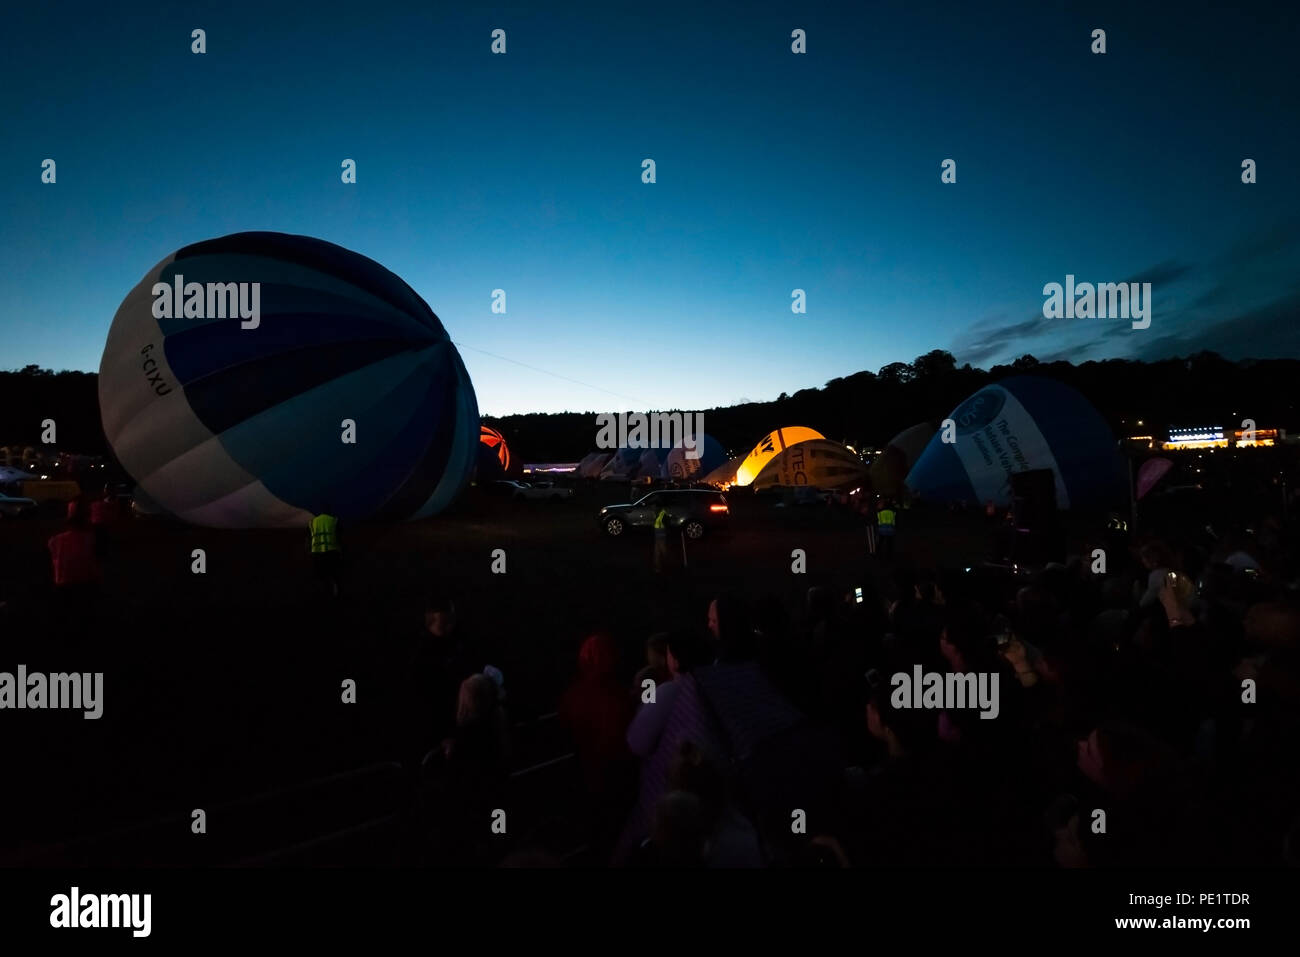 Nacht Leuchten am Abend des Bristol International Balloon Fiesta. Eine Reihe von Ballons in der Nacht Musik mit ihren Gasbrenner durchgeführt Stockfoto